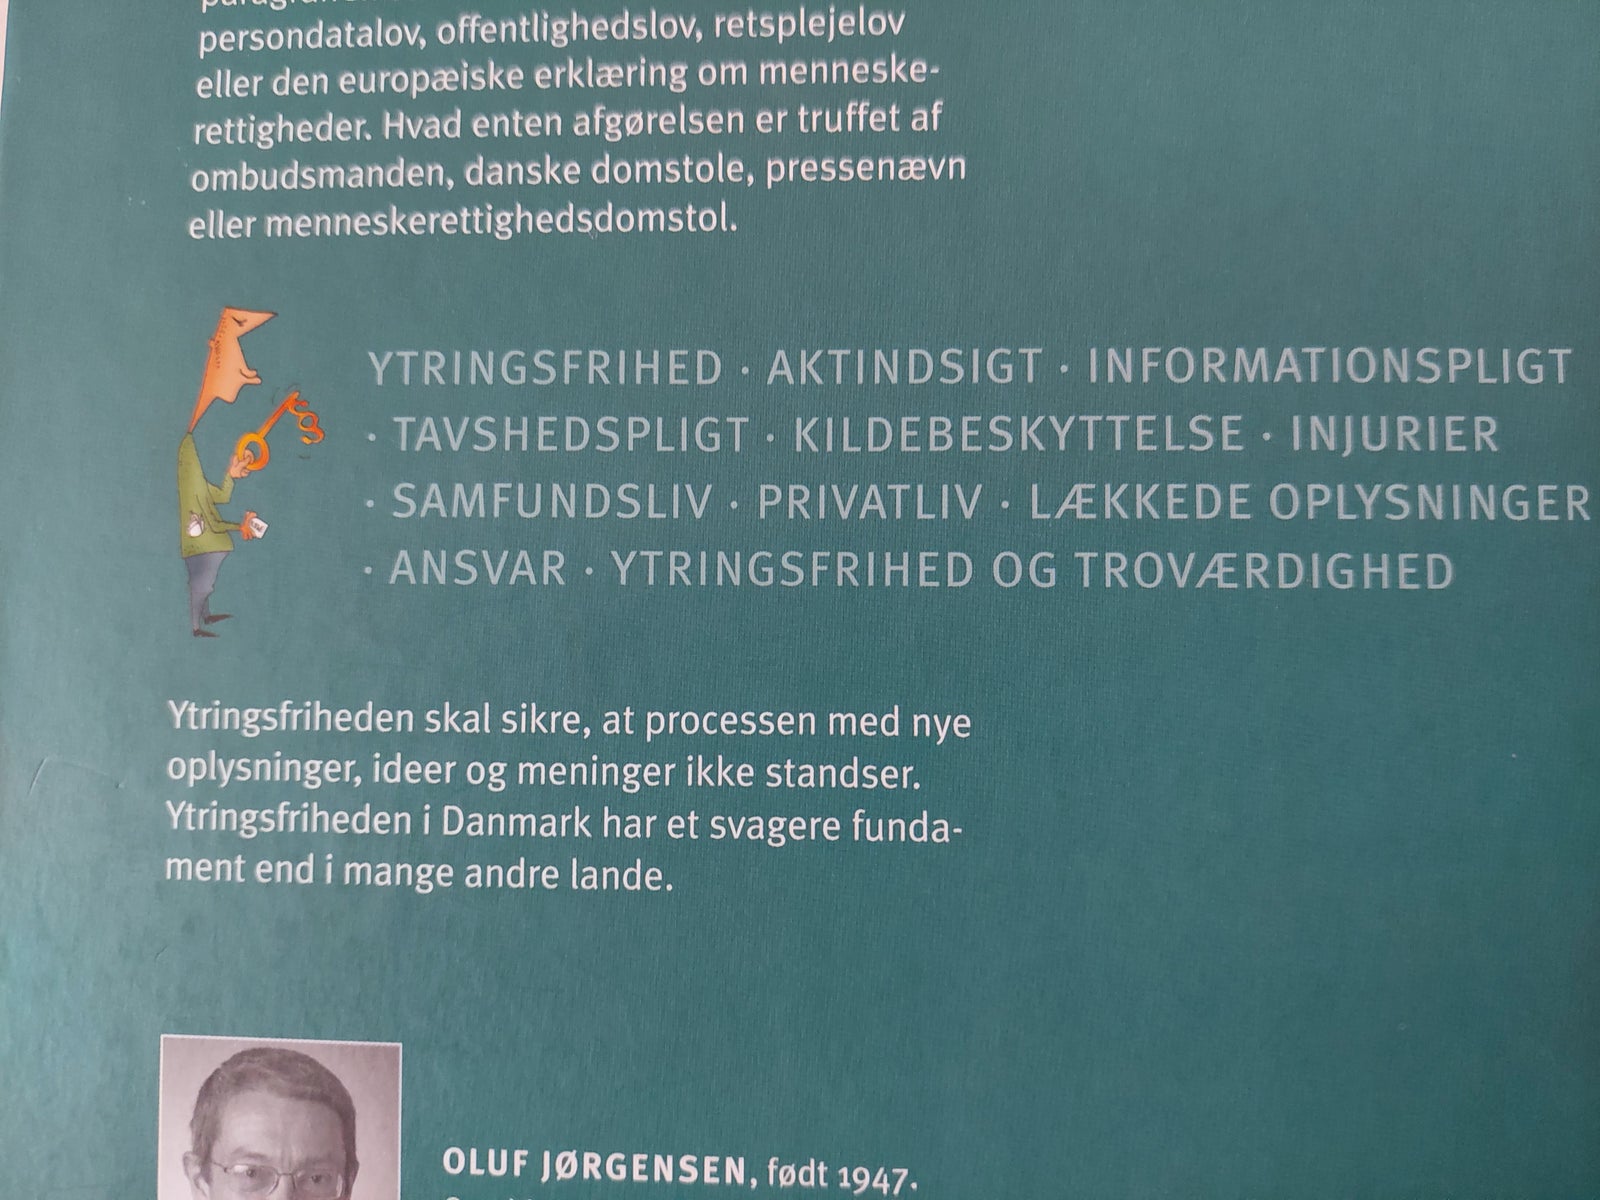 Det handler om ytringsfrihed, Oluf Jørgensen